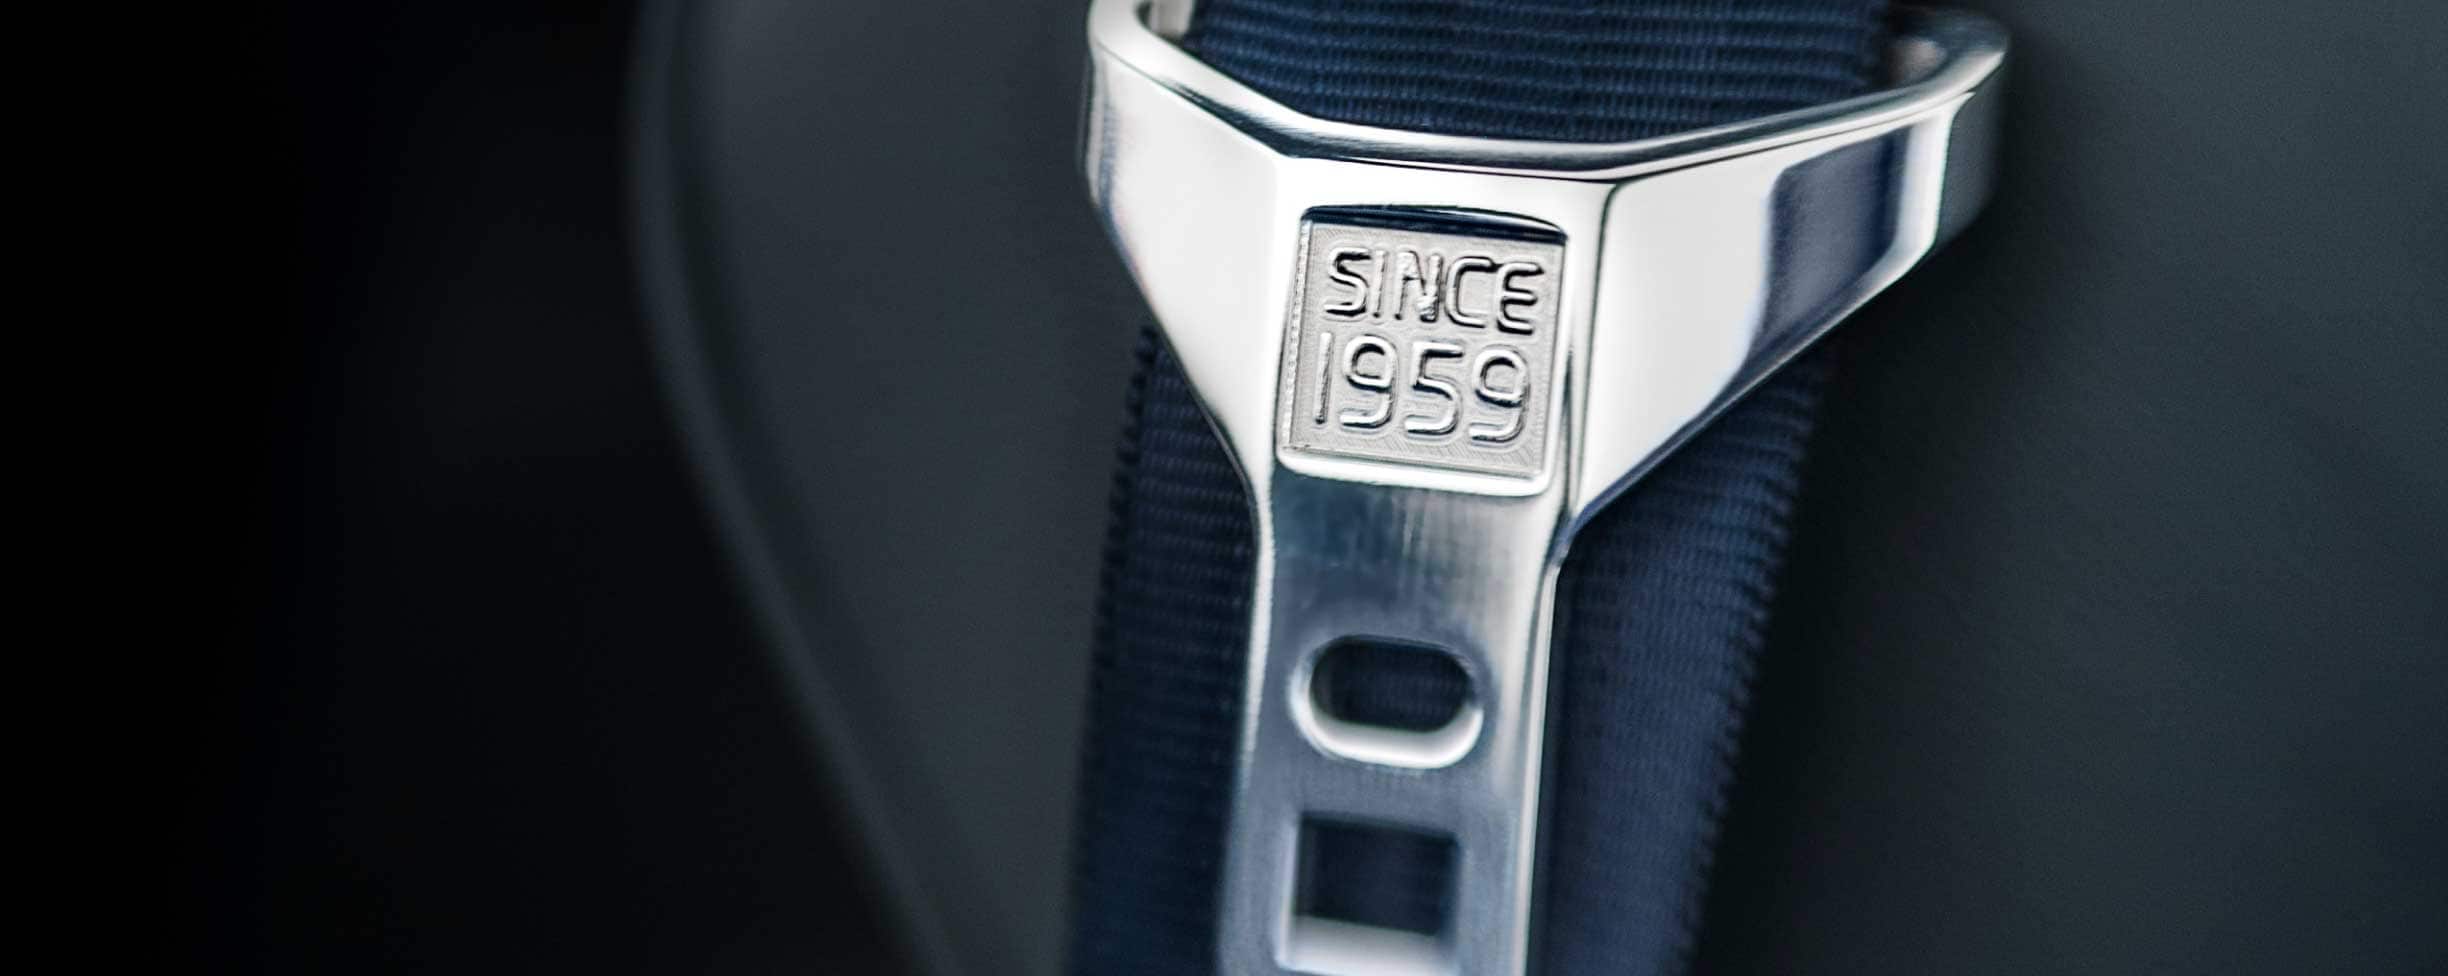 バックルに「1959年以来」の文字が刻印されたグレーの安全ベルト。